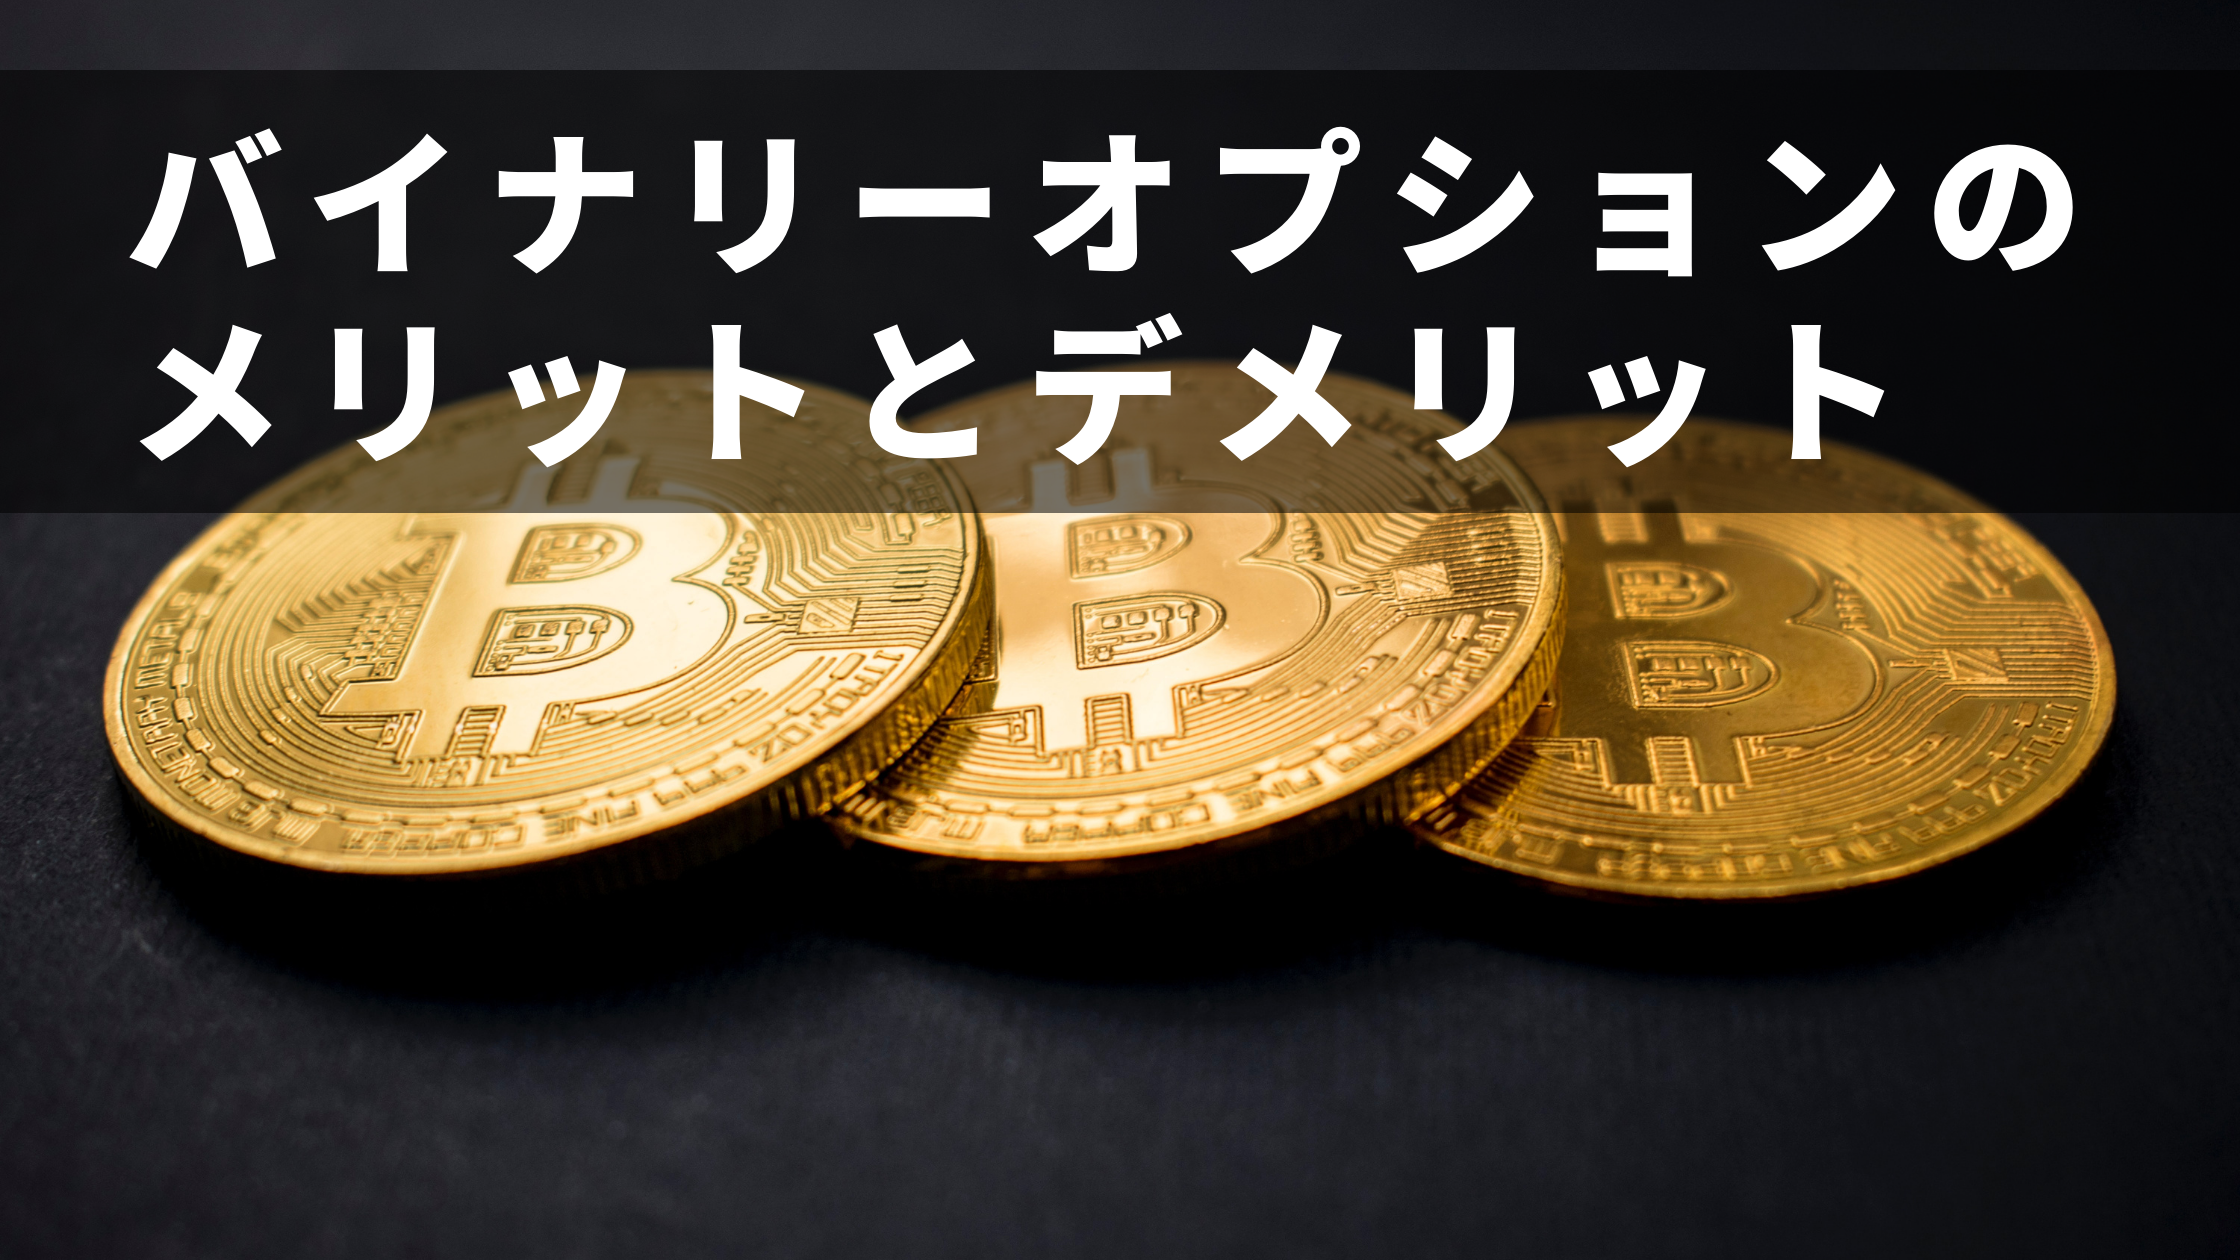 黒い背景に3枚のビットコインが並んでいる写真